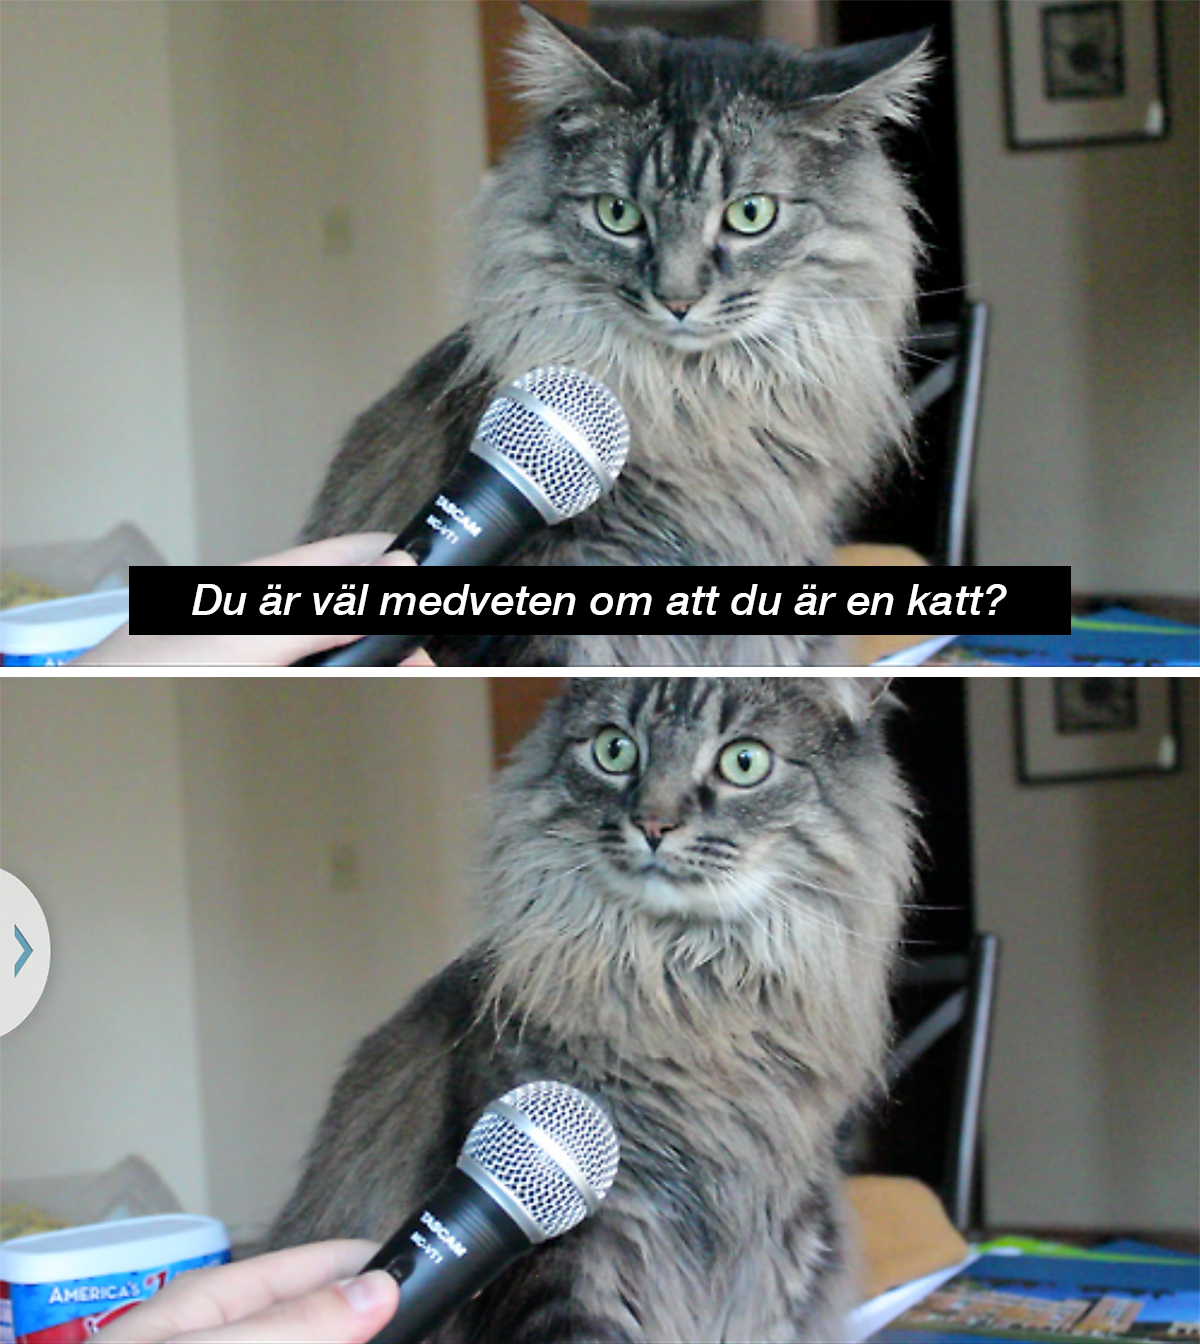 Katt blir intervjuad - Du är väl medveten om att du är en katt?